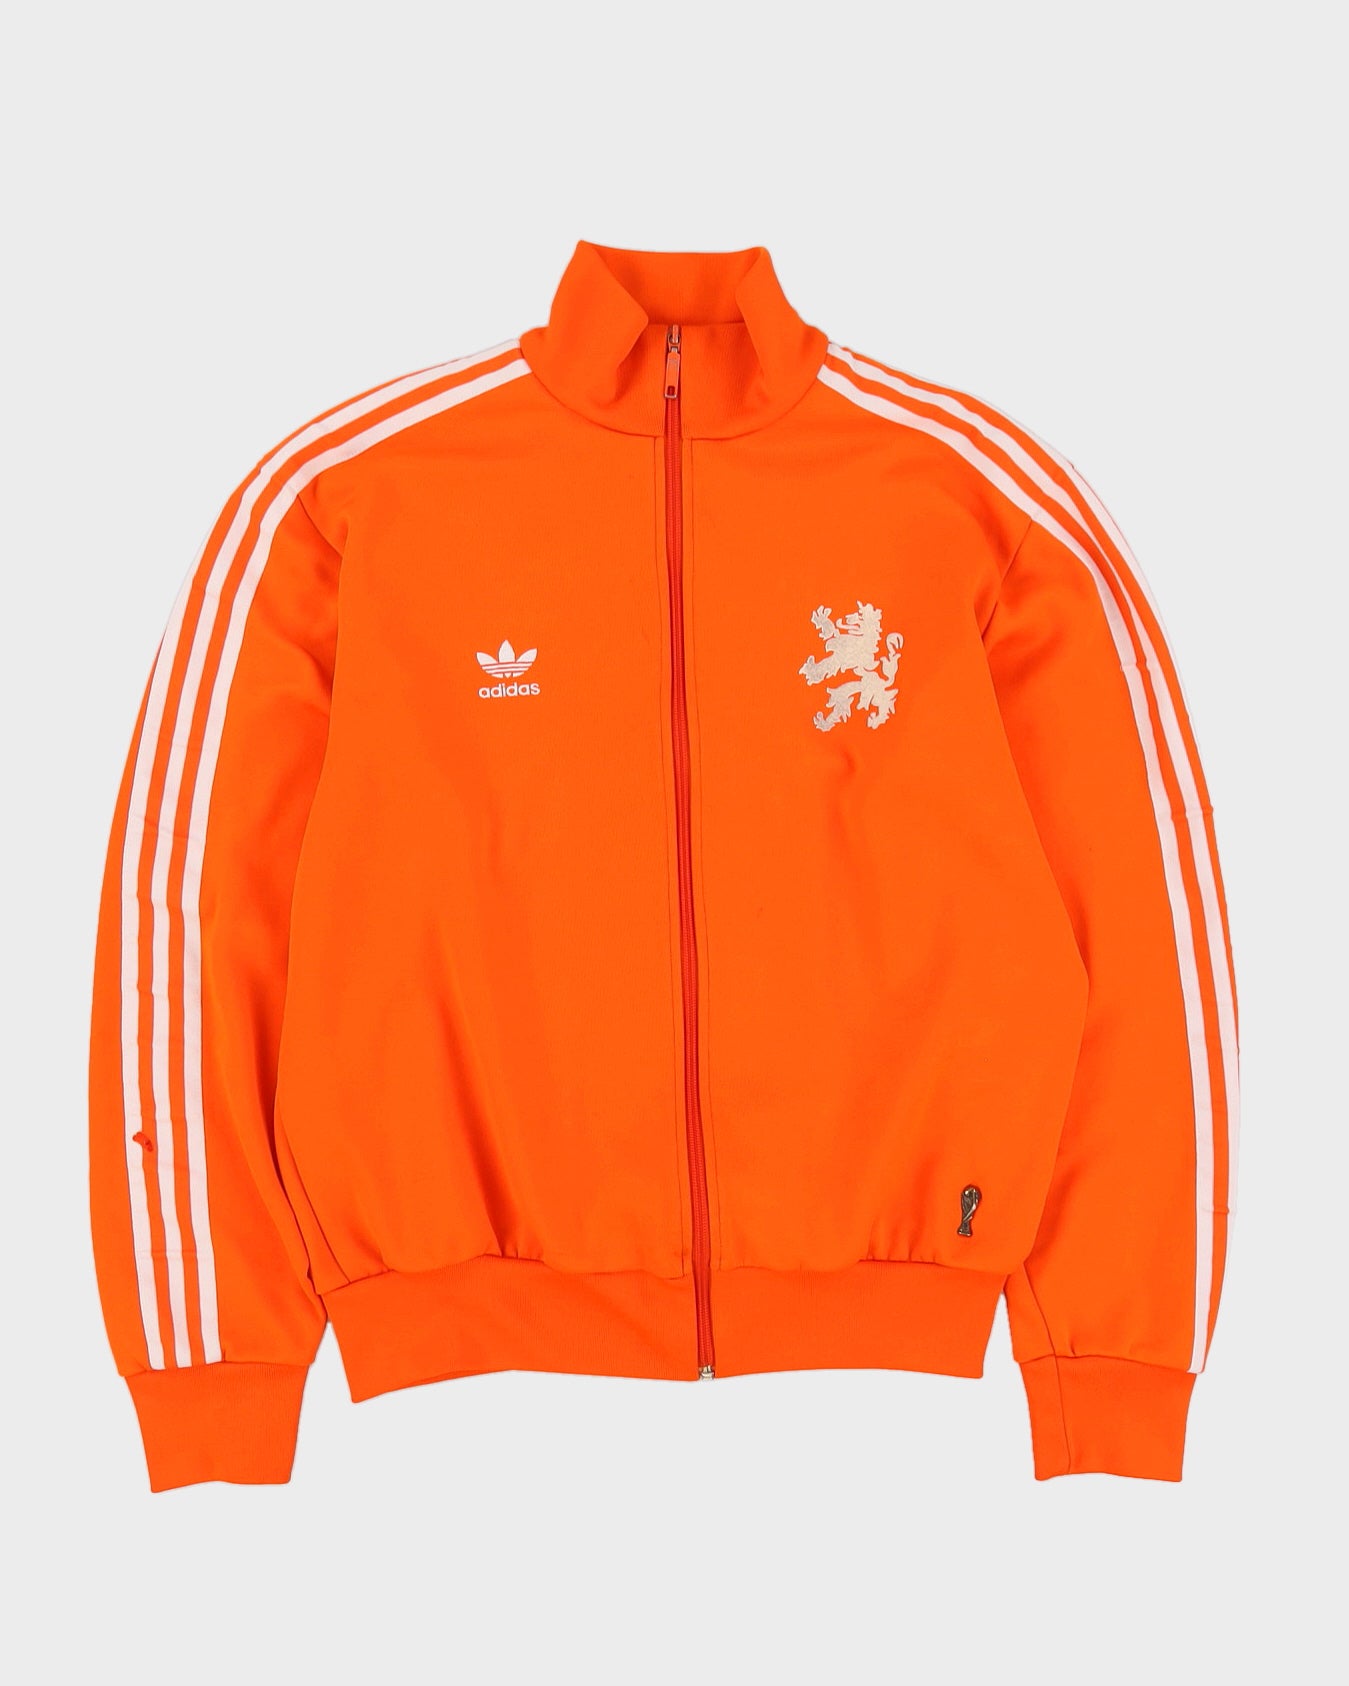 Adidas naranja 1974 repro holland netherlands chaqueta de chándal naranja -  l – Rokit